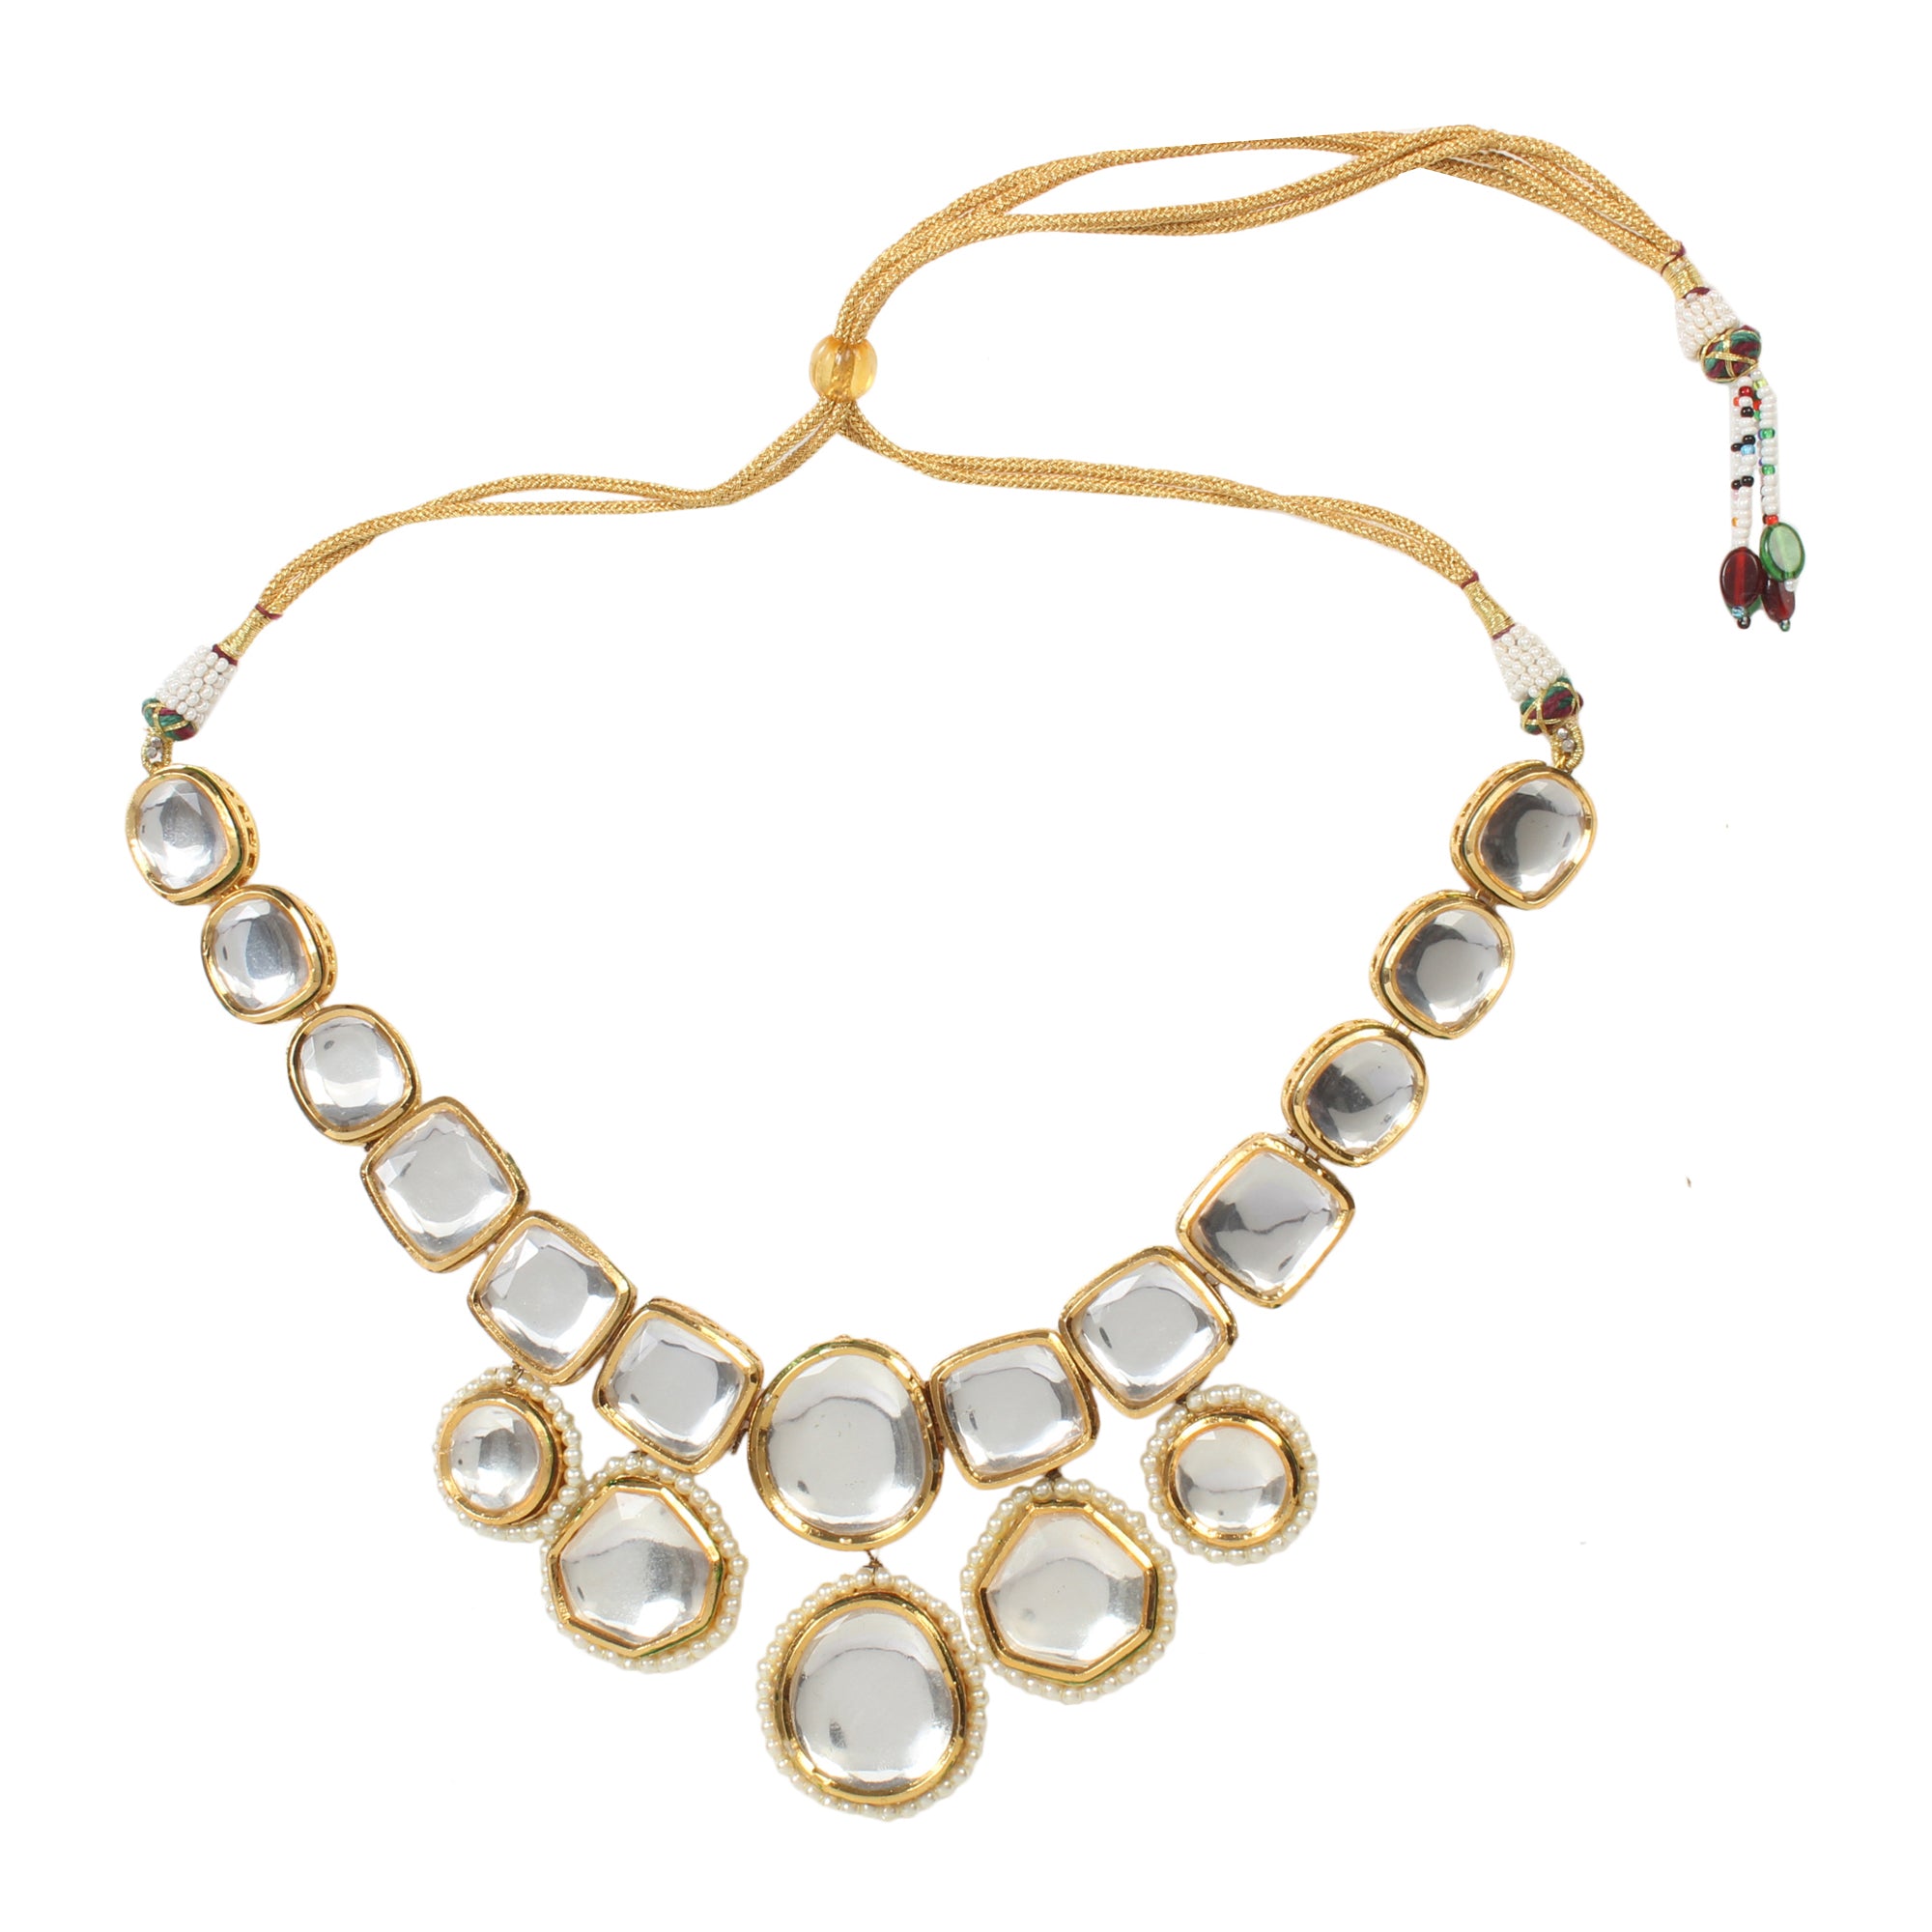 Women's Kundan Inspired Necklace with earrings - Femizen